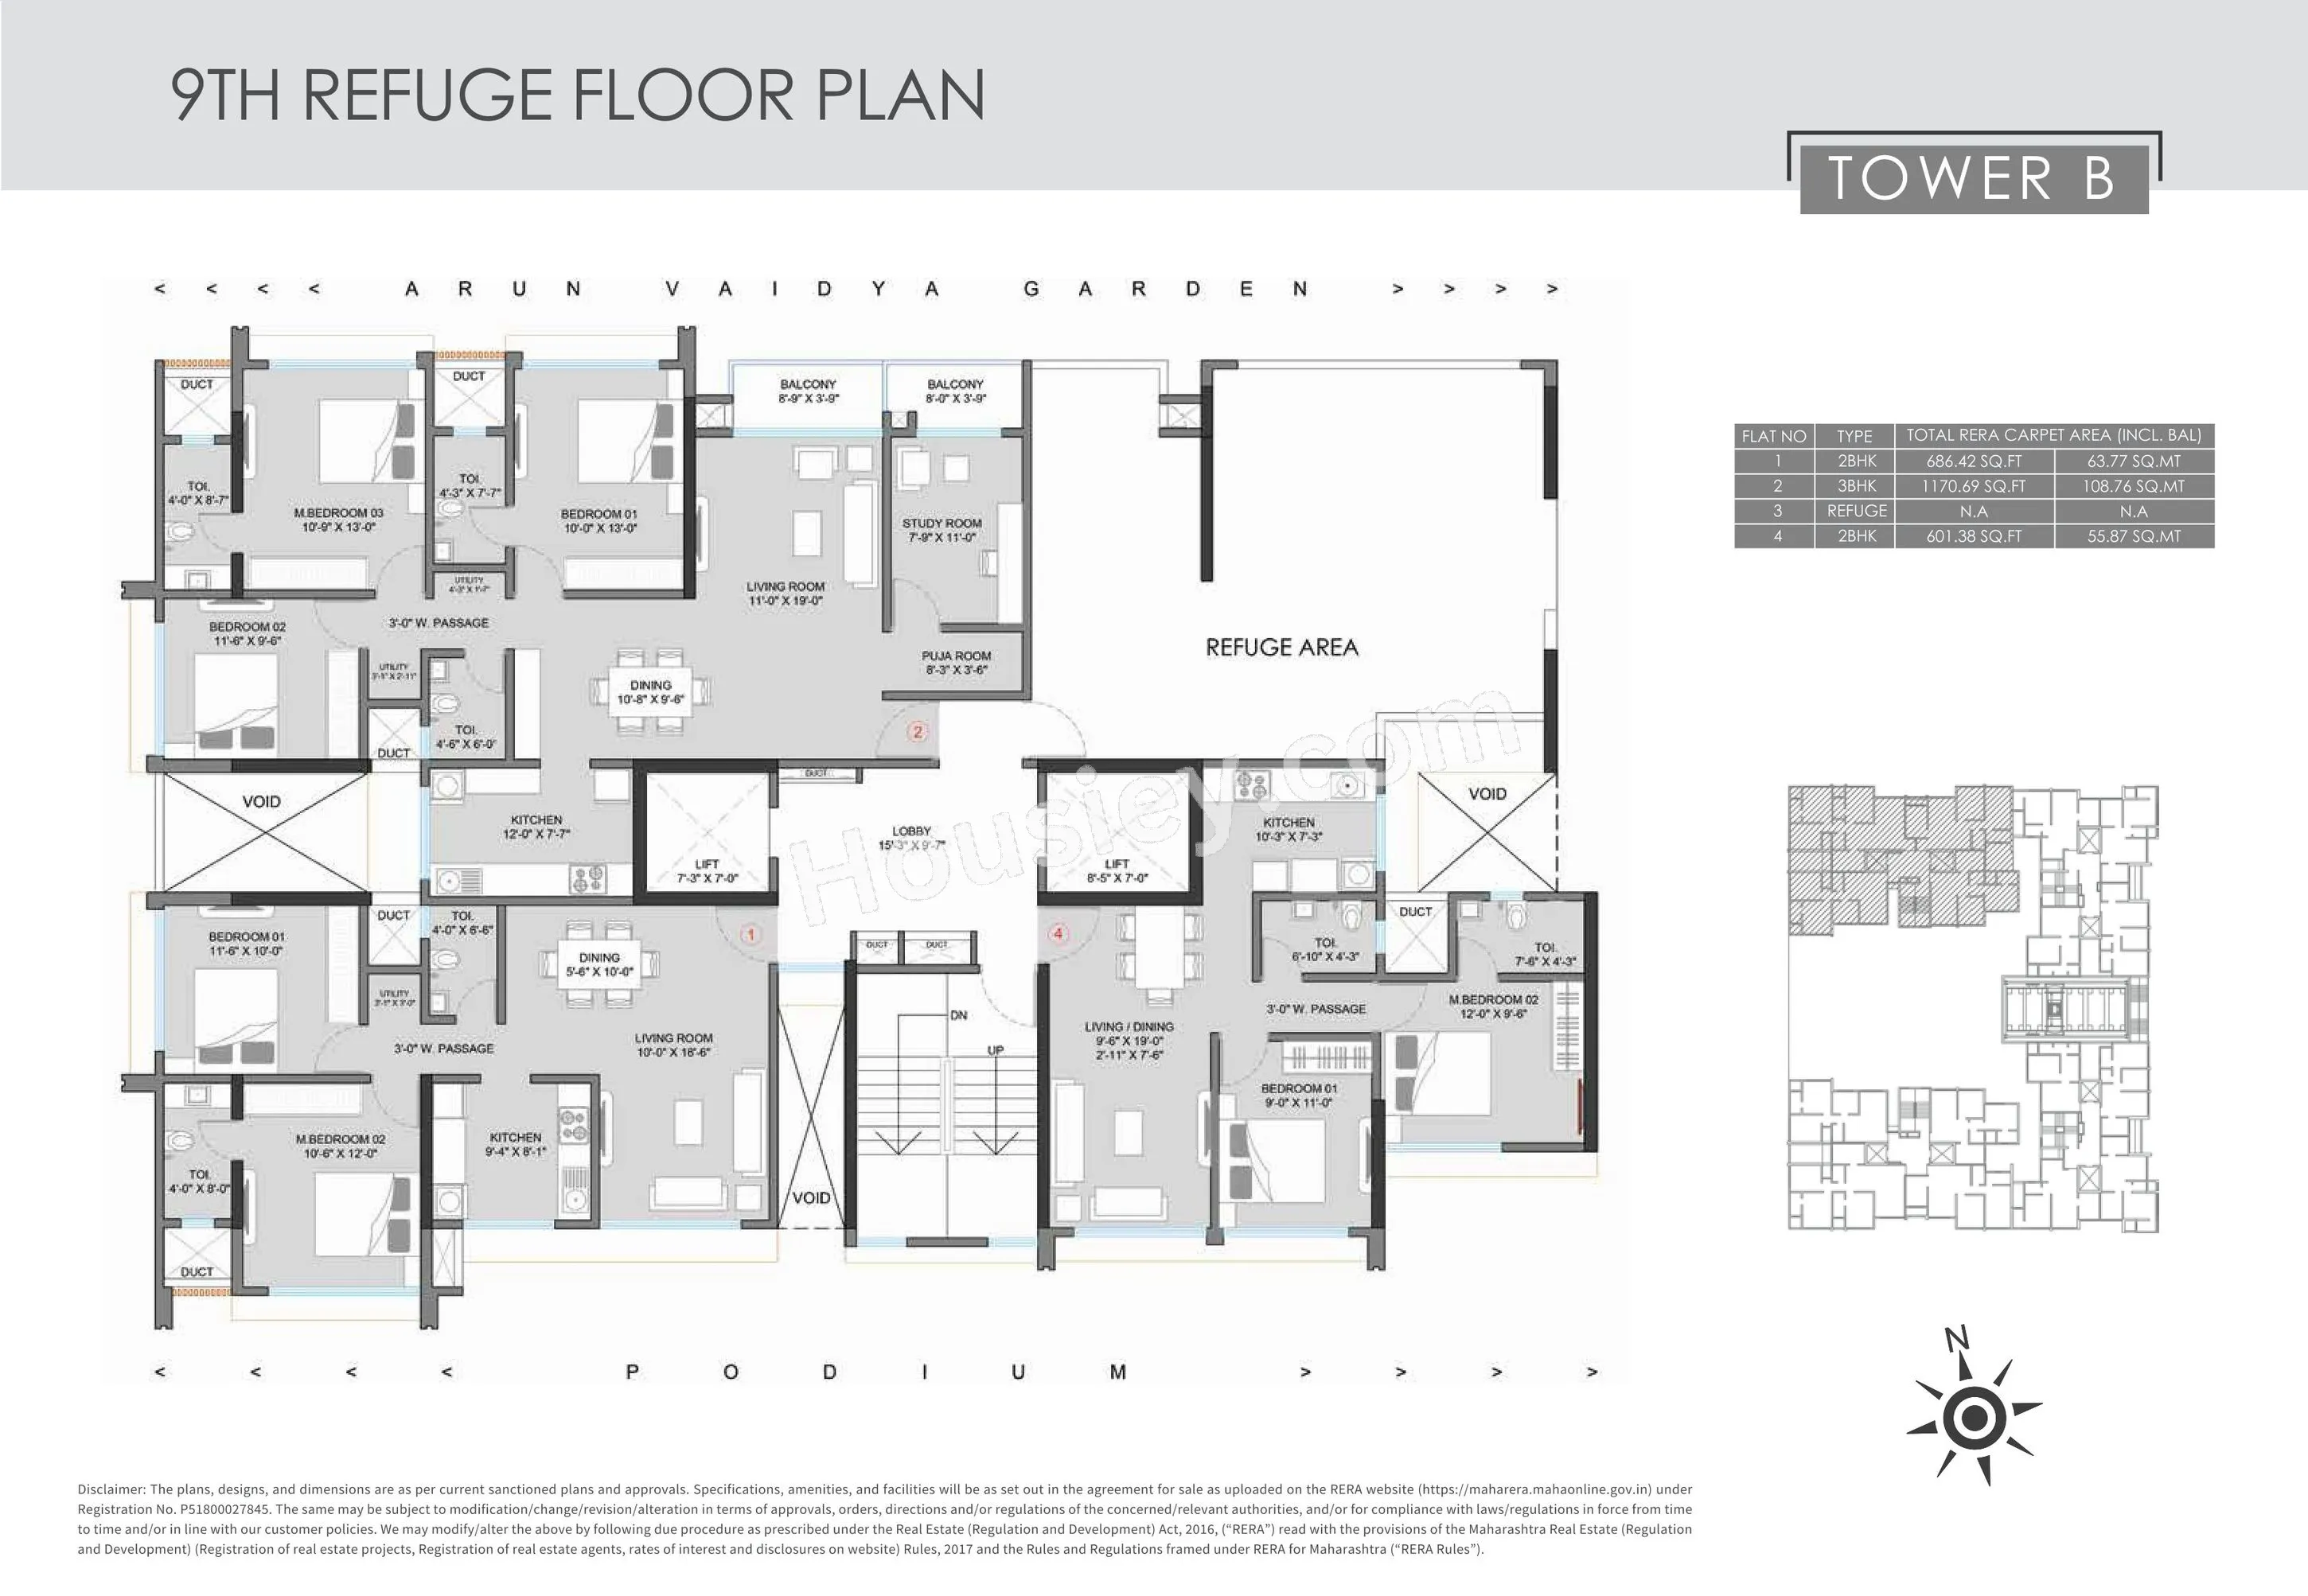 Floor Plan 8